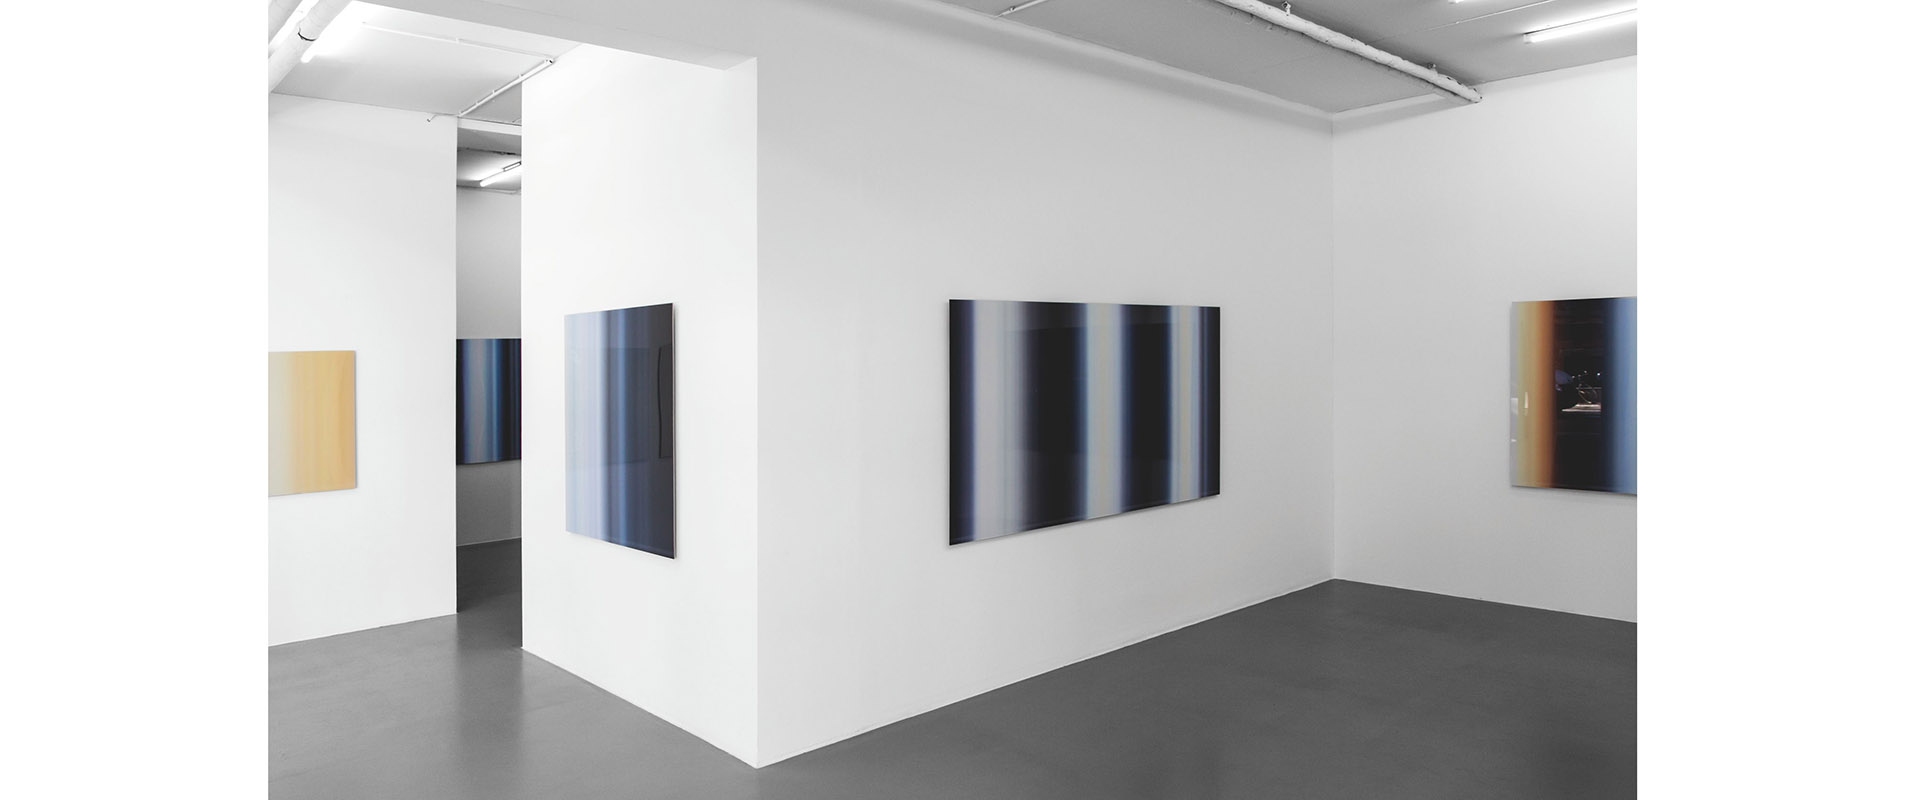 Ausstellungsansicht "Inge Dick - jahres licht weiss", Galerie Renate Bender 2016